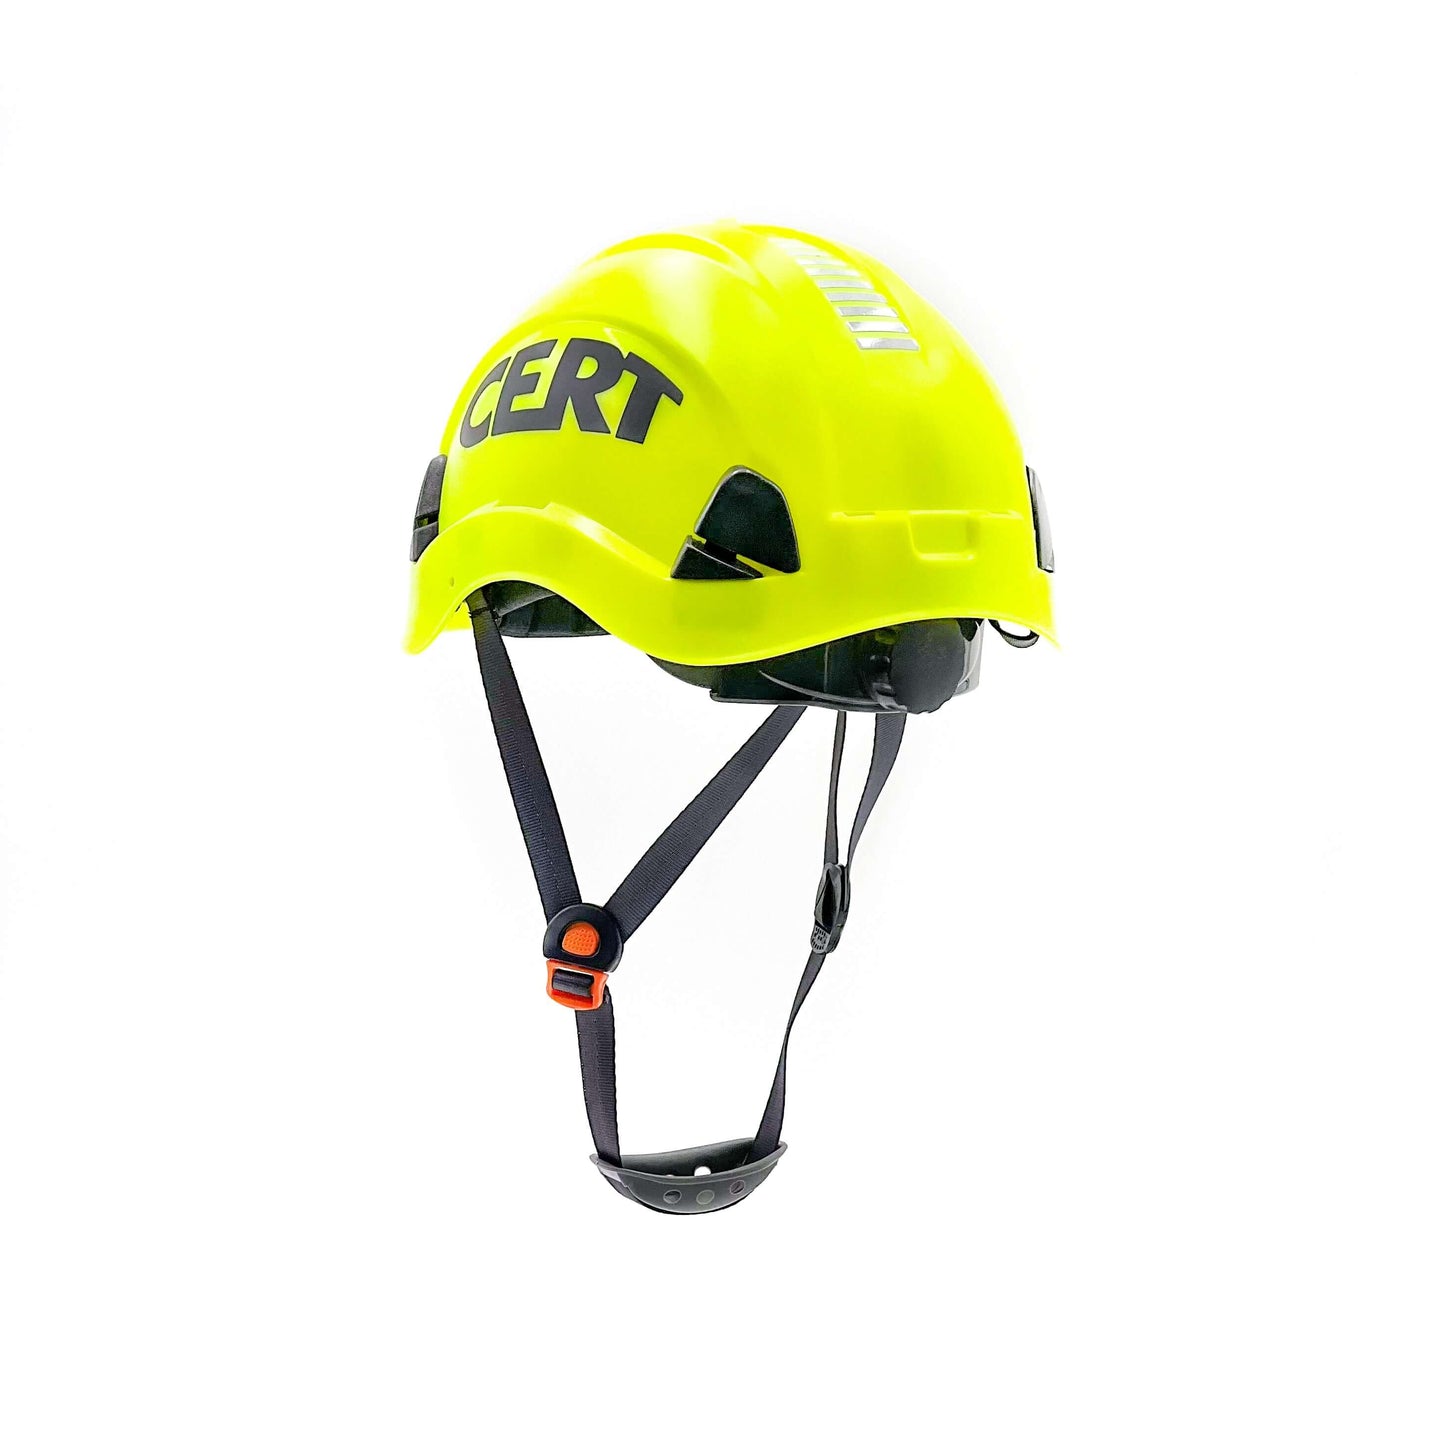 CERT Helmet - Hard Hat